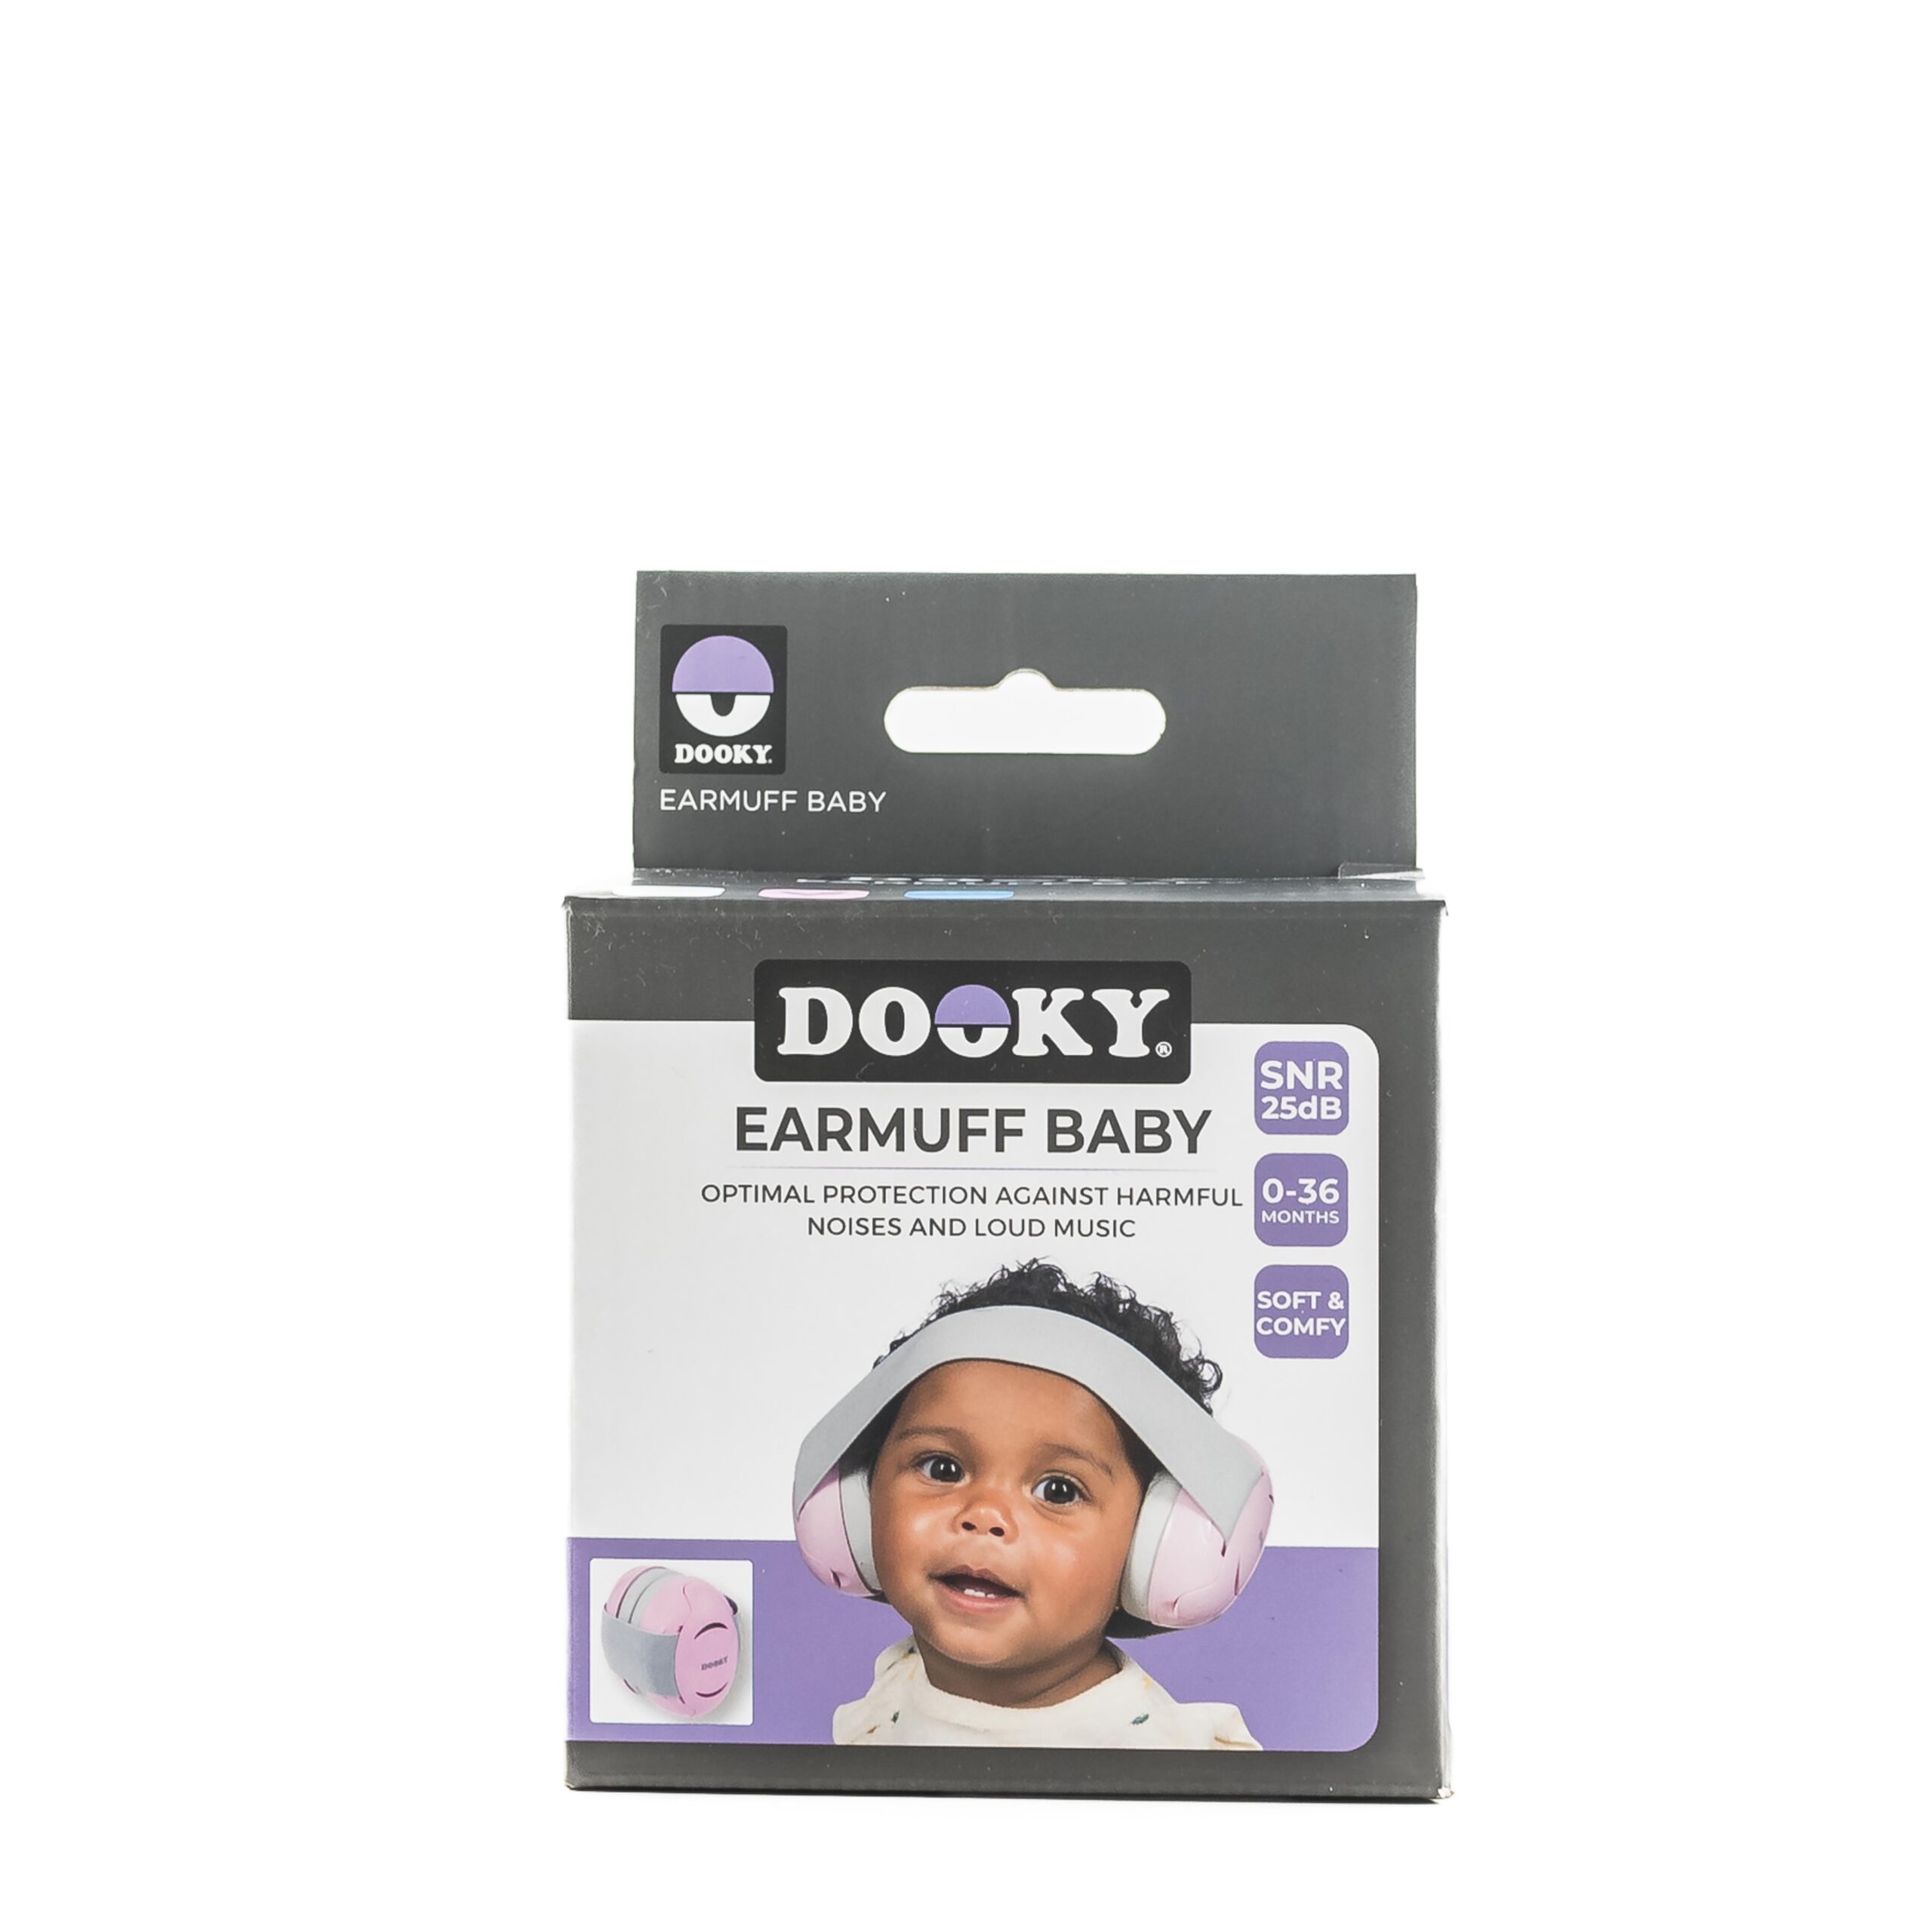 Dooky_Earmuff_Baby-6039